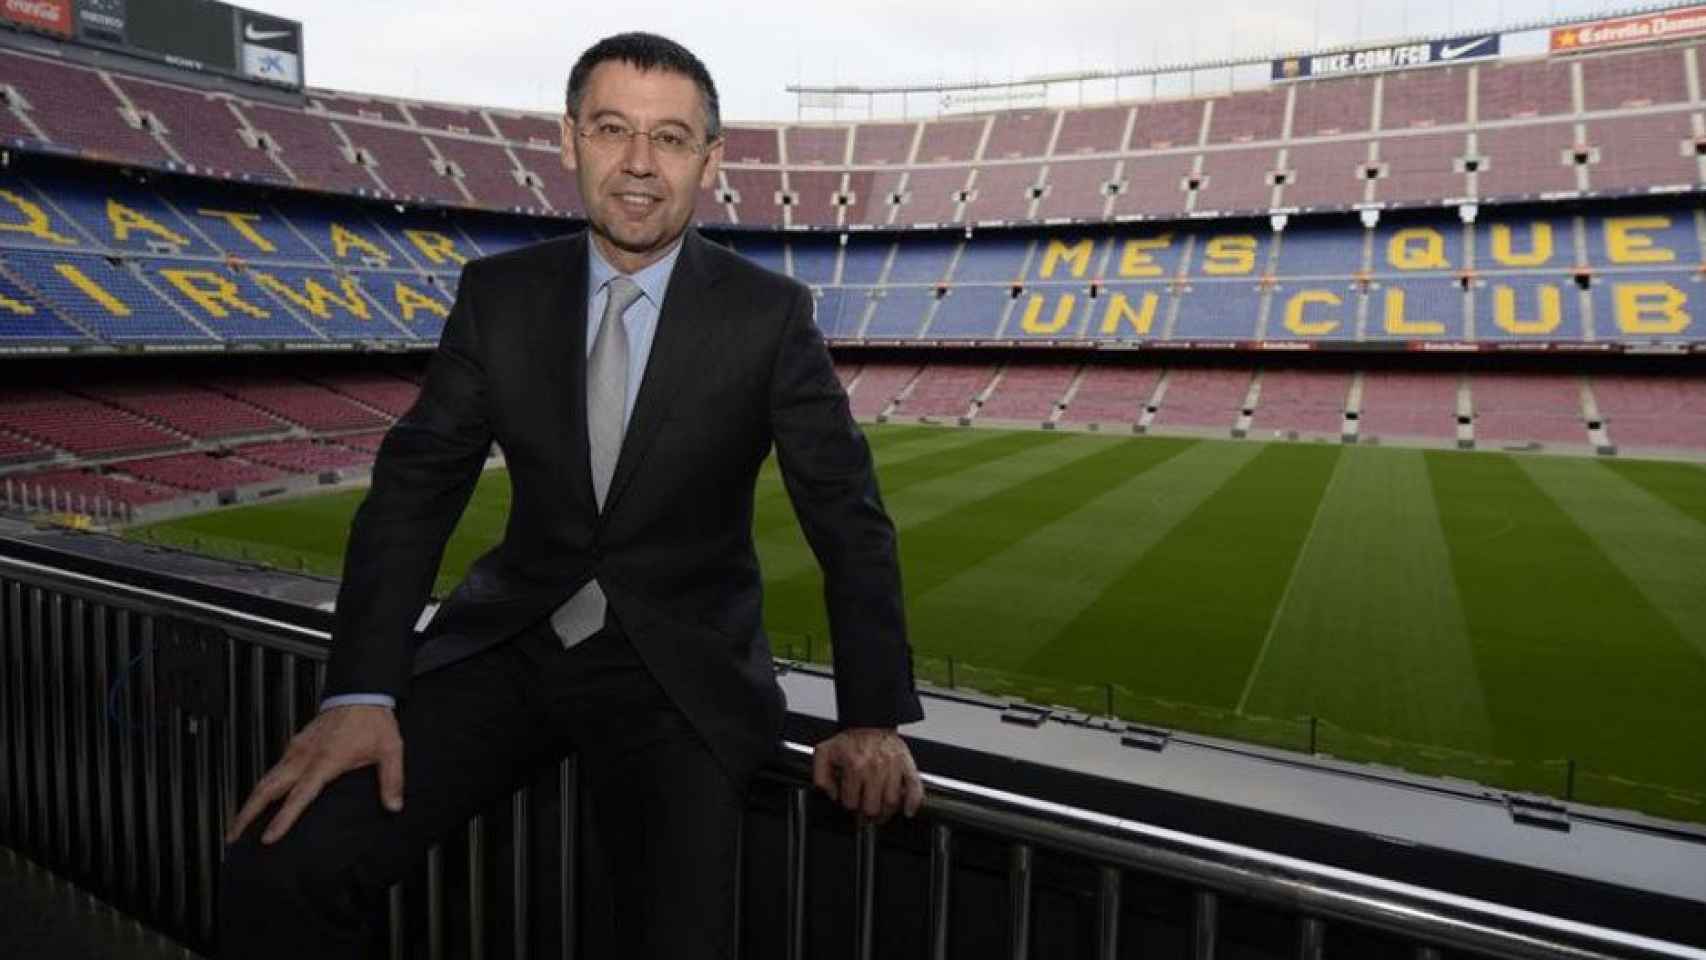 El presidente del Barça Bartomeu posa ante el Camp Nou / FCB